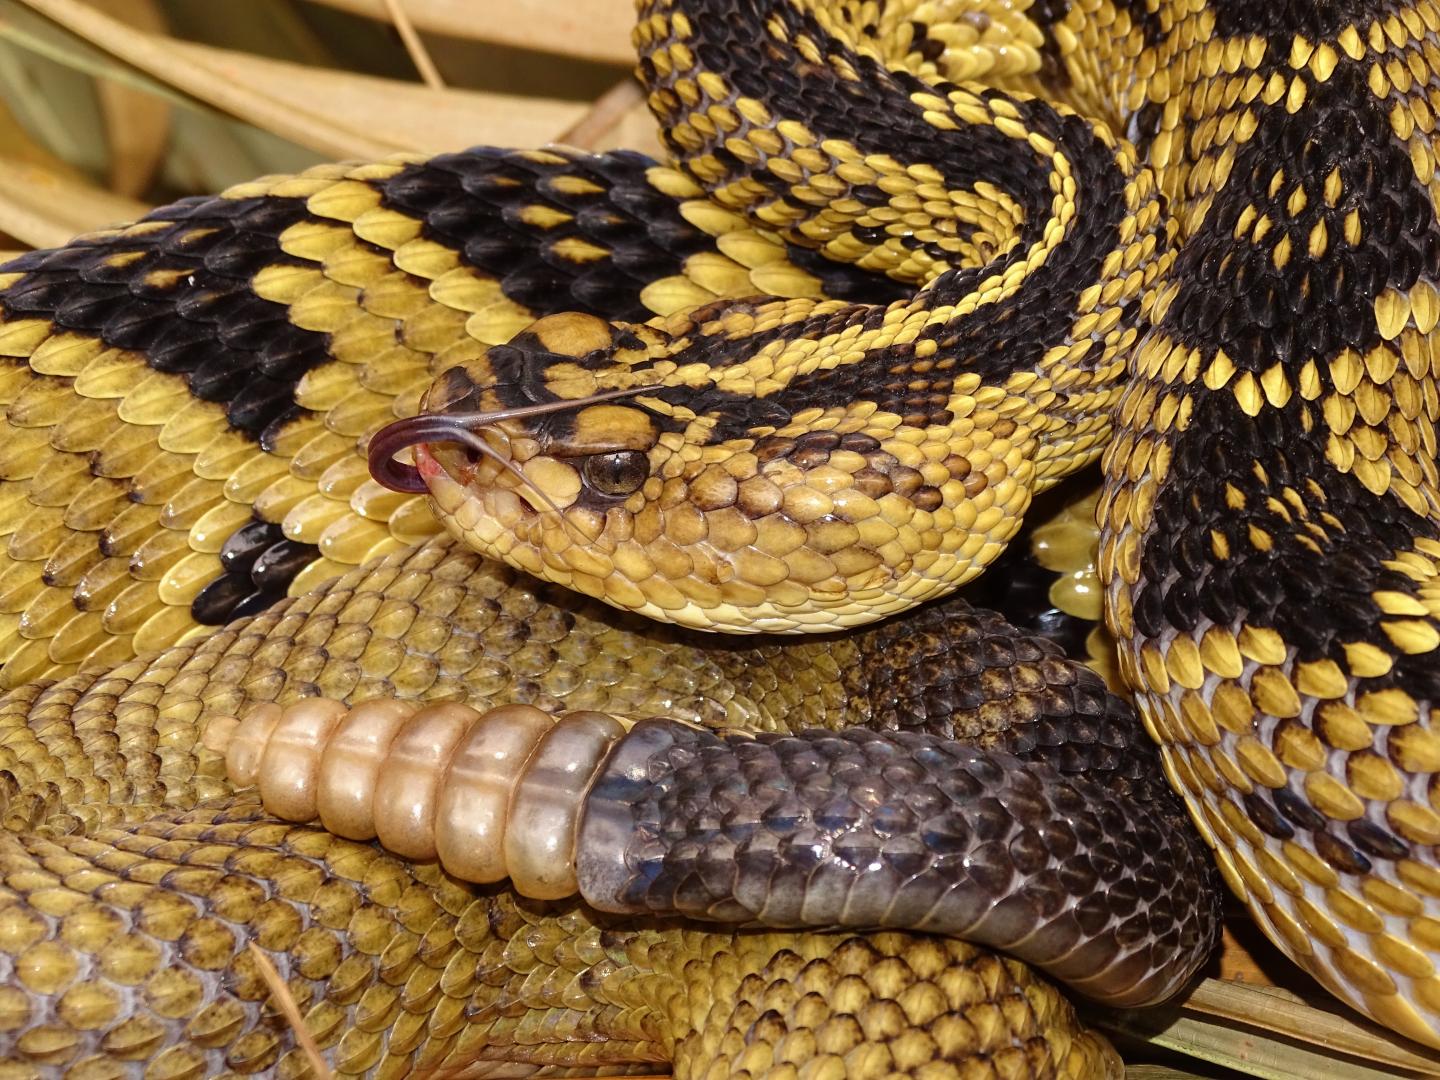 A large Totonacan Rattlesnake